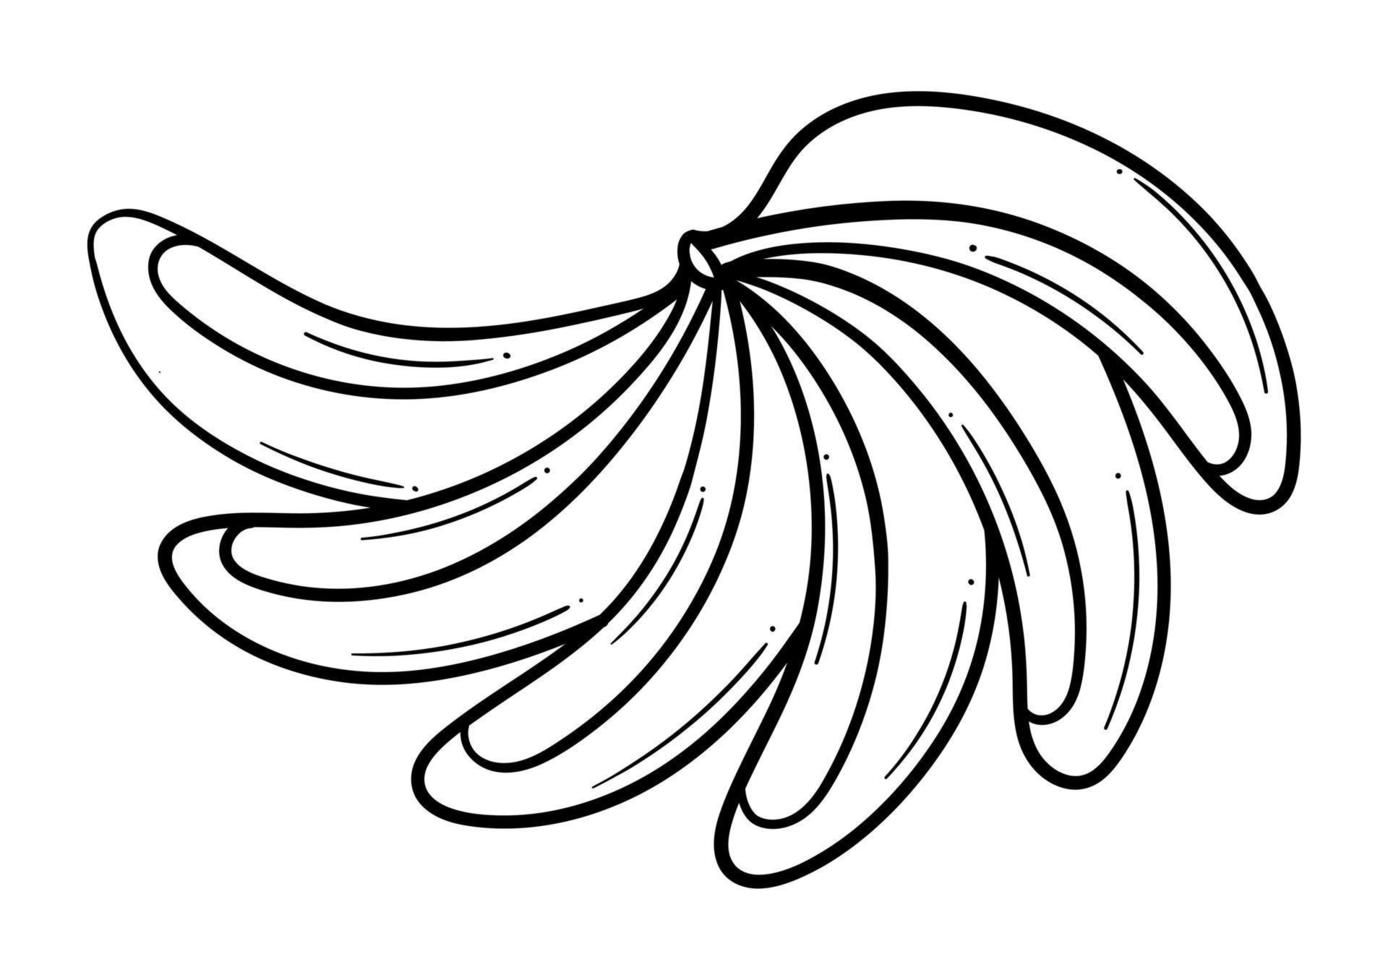 bando de bananas desenhados à mão vetor